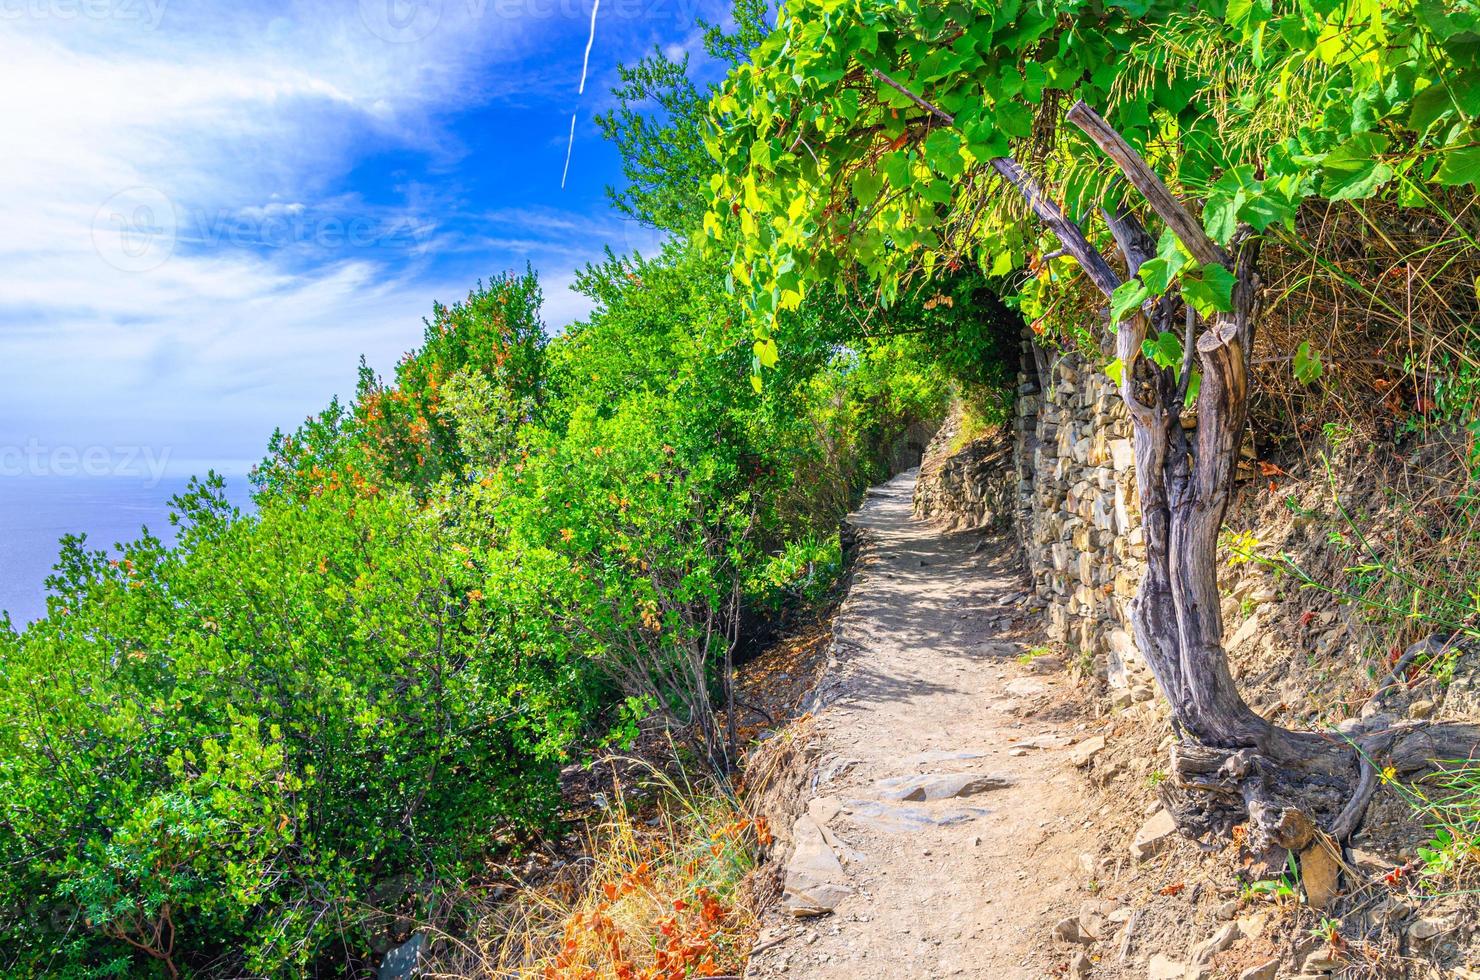 sendero peatonal de piedra entre los pueblos de corniglia y vernazza con árboles verdes, fondo de cielo azul foto